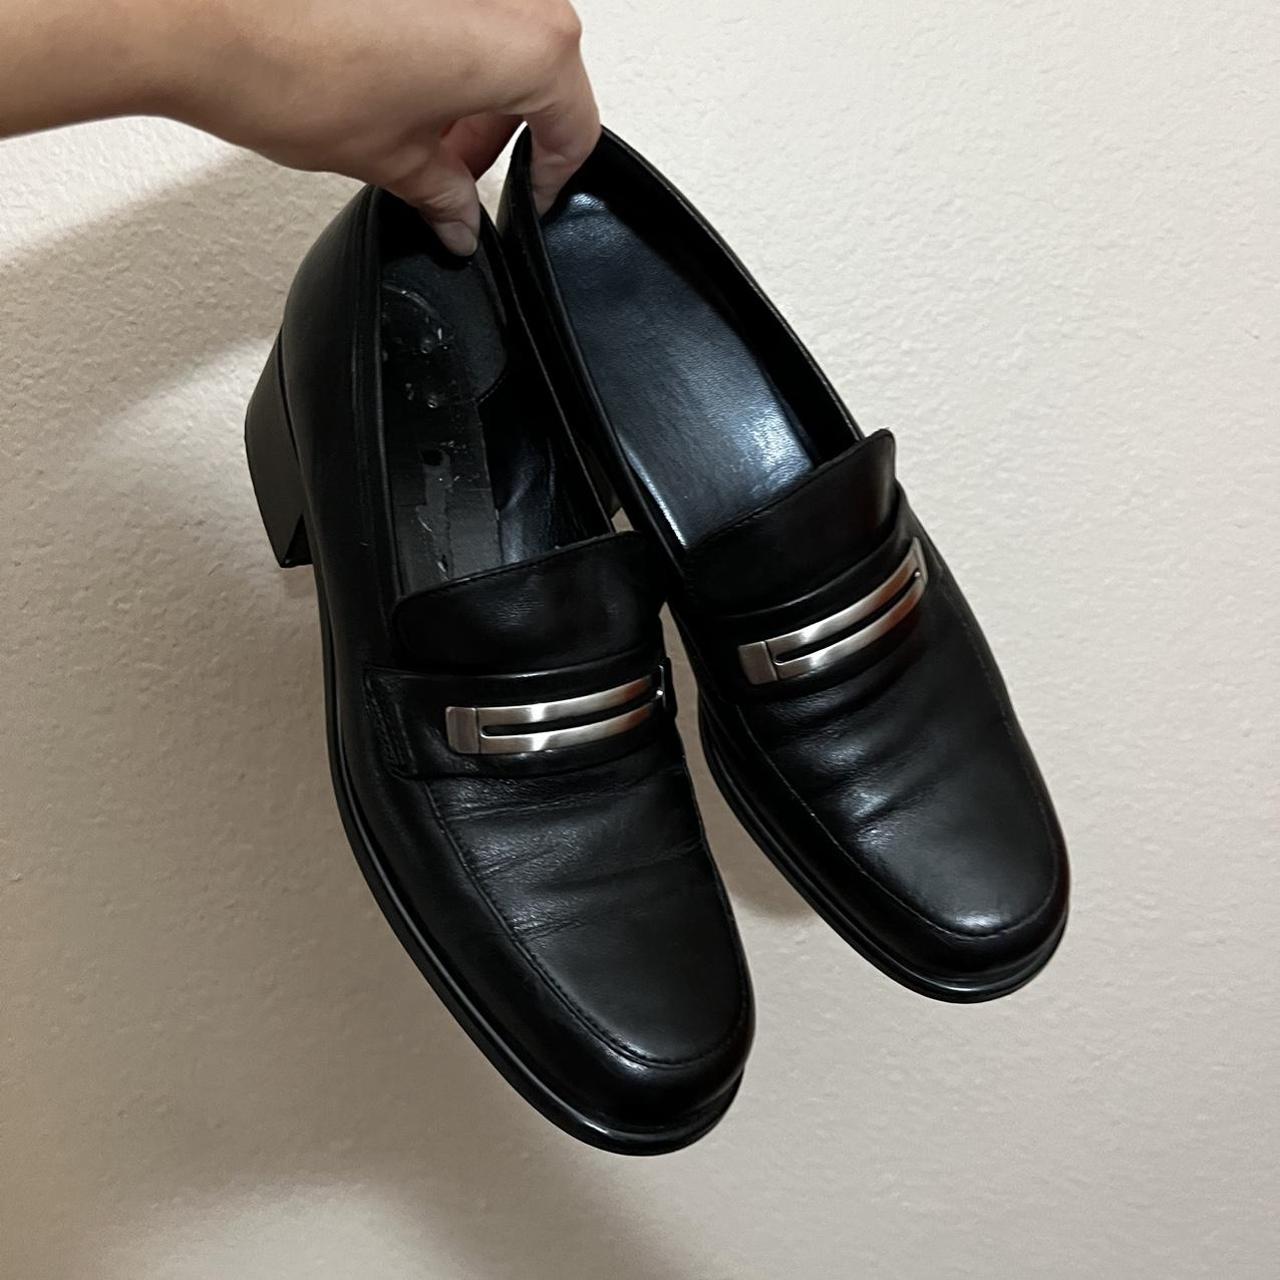 Vintage leather loafers by Nine West black... - Depop